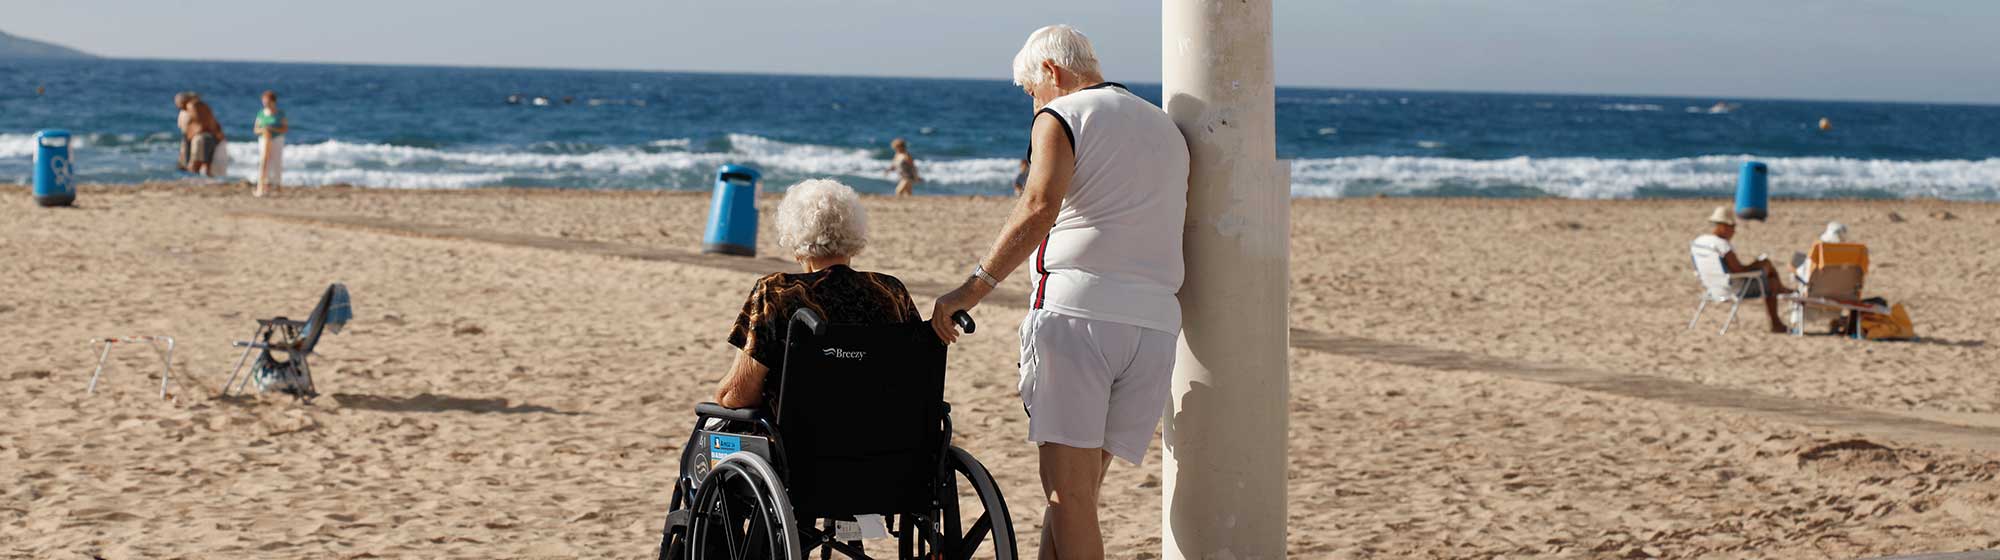 Deux personnes âgées contemplent l'horizon depuis le rivage d'une plage